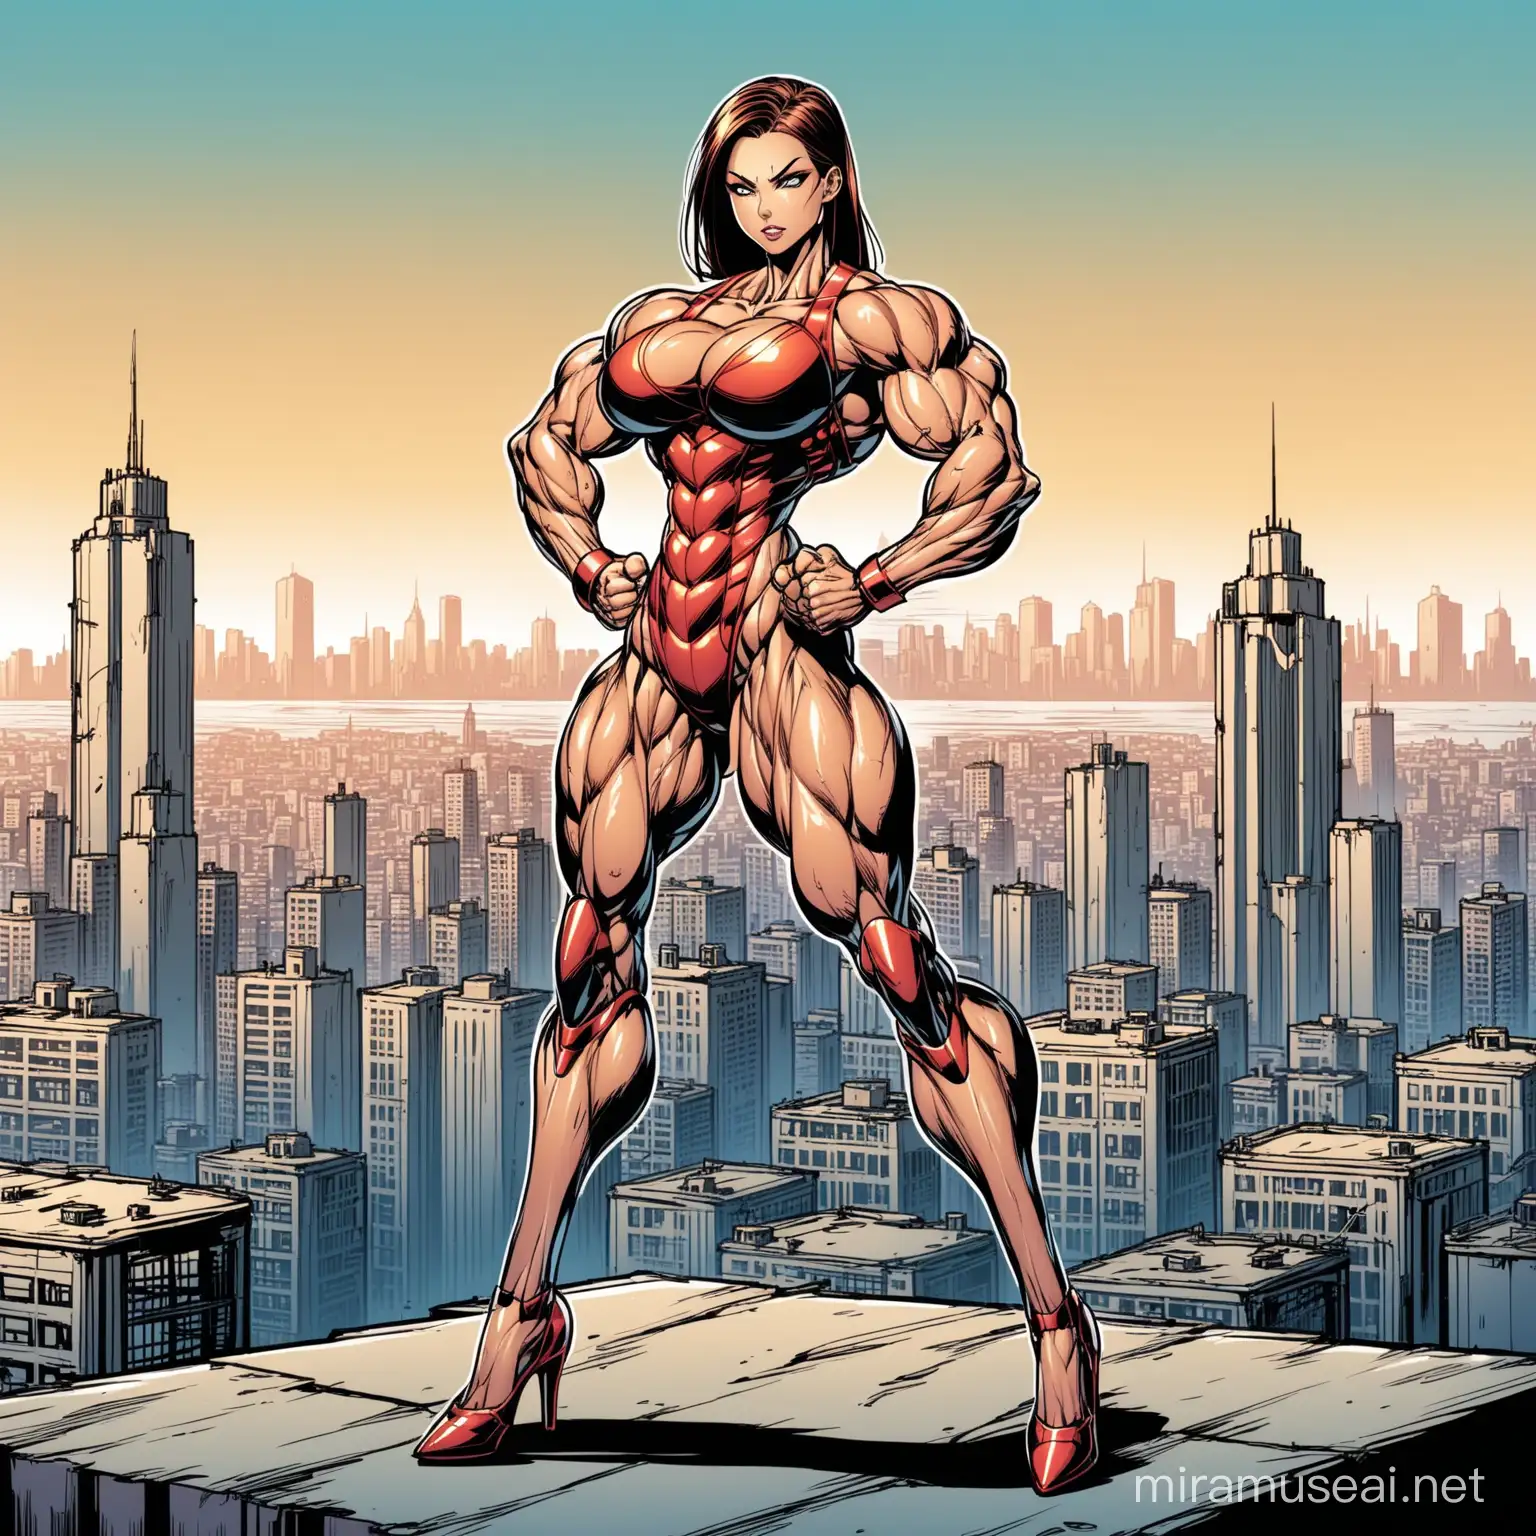 Очень красивая худая очень мускулистая молодая девушка робот,покрыта large veins, с макияжем, на каблуках, напрягает бицепс, стиль комиксов, на фоне города 